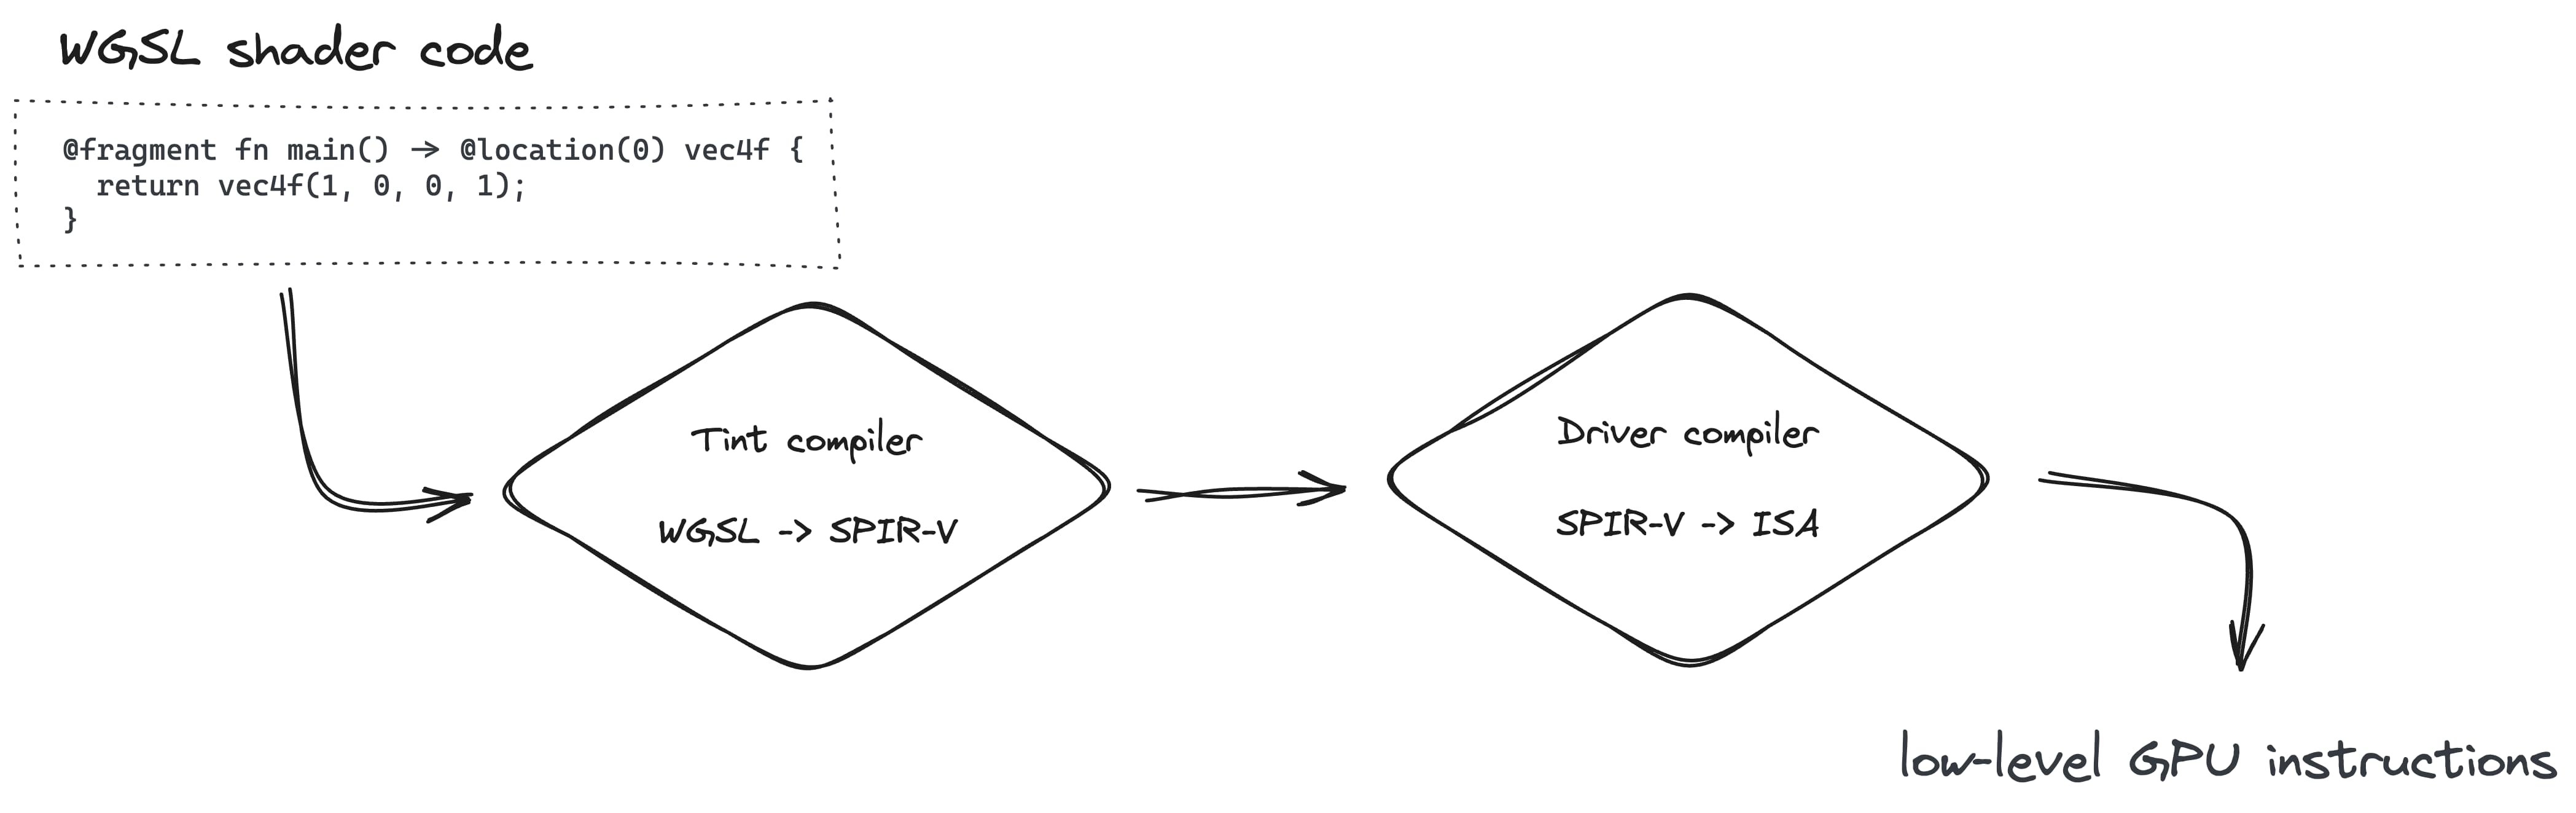 Quá trình tạo quy trình kết xuất bao gồm việc chuyển đổi WGSL sang SPIR-V bằng trình biên dịch Tint, sau đó chuyển sang ISA bằng trình biên dịch Trình điều khiển.